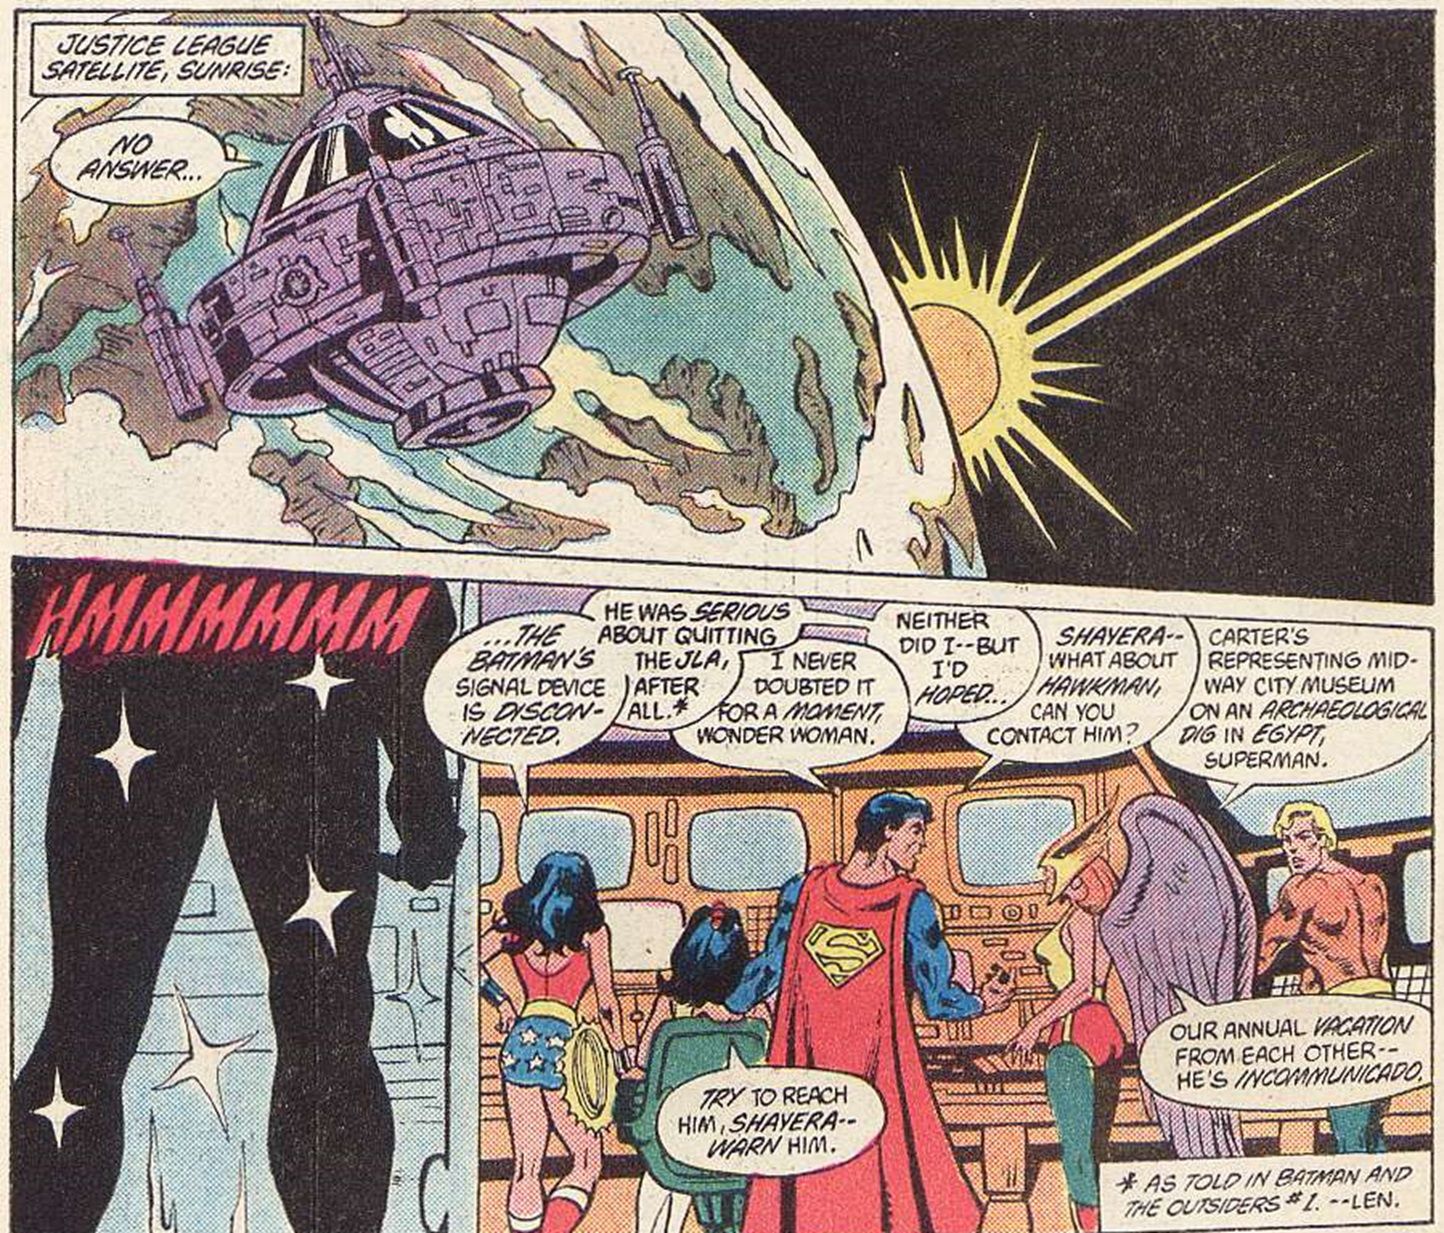 Когда Бэтмен вернулся в Лигу справедливости после того, как ушел из-за чужаков?